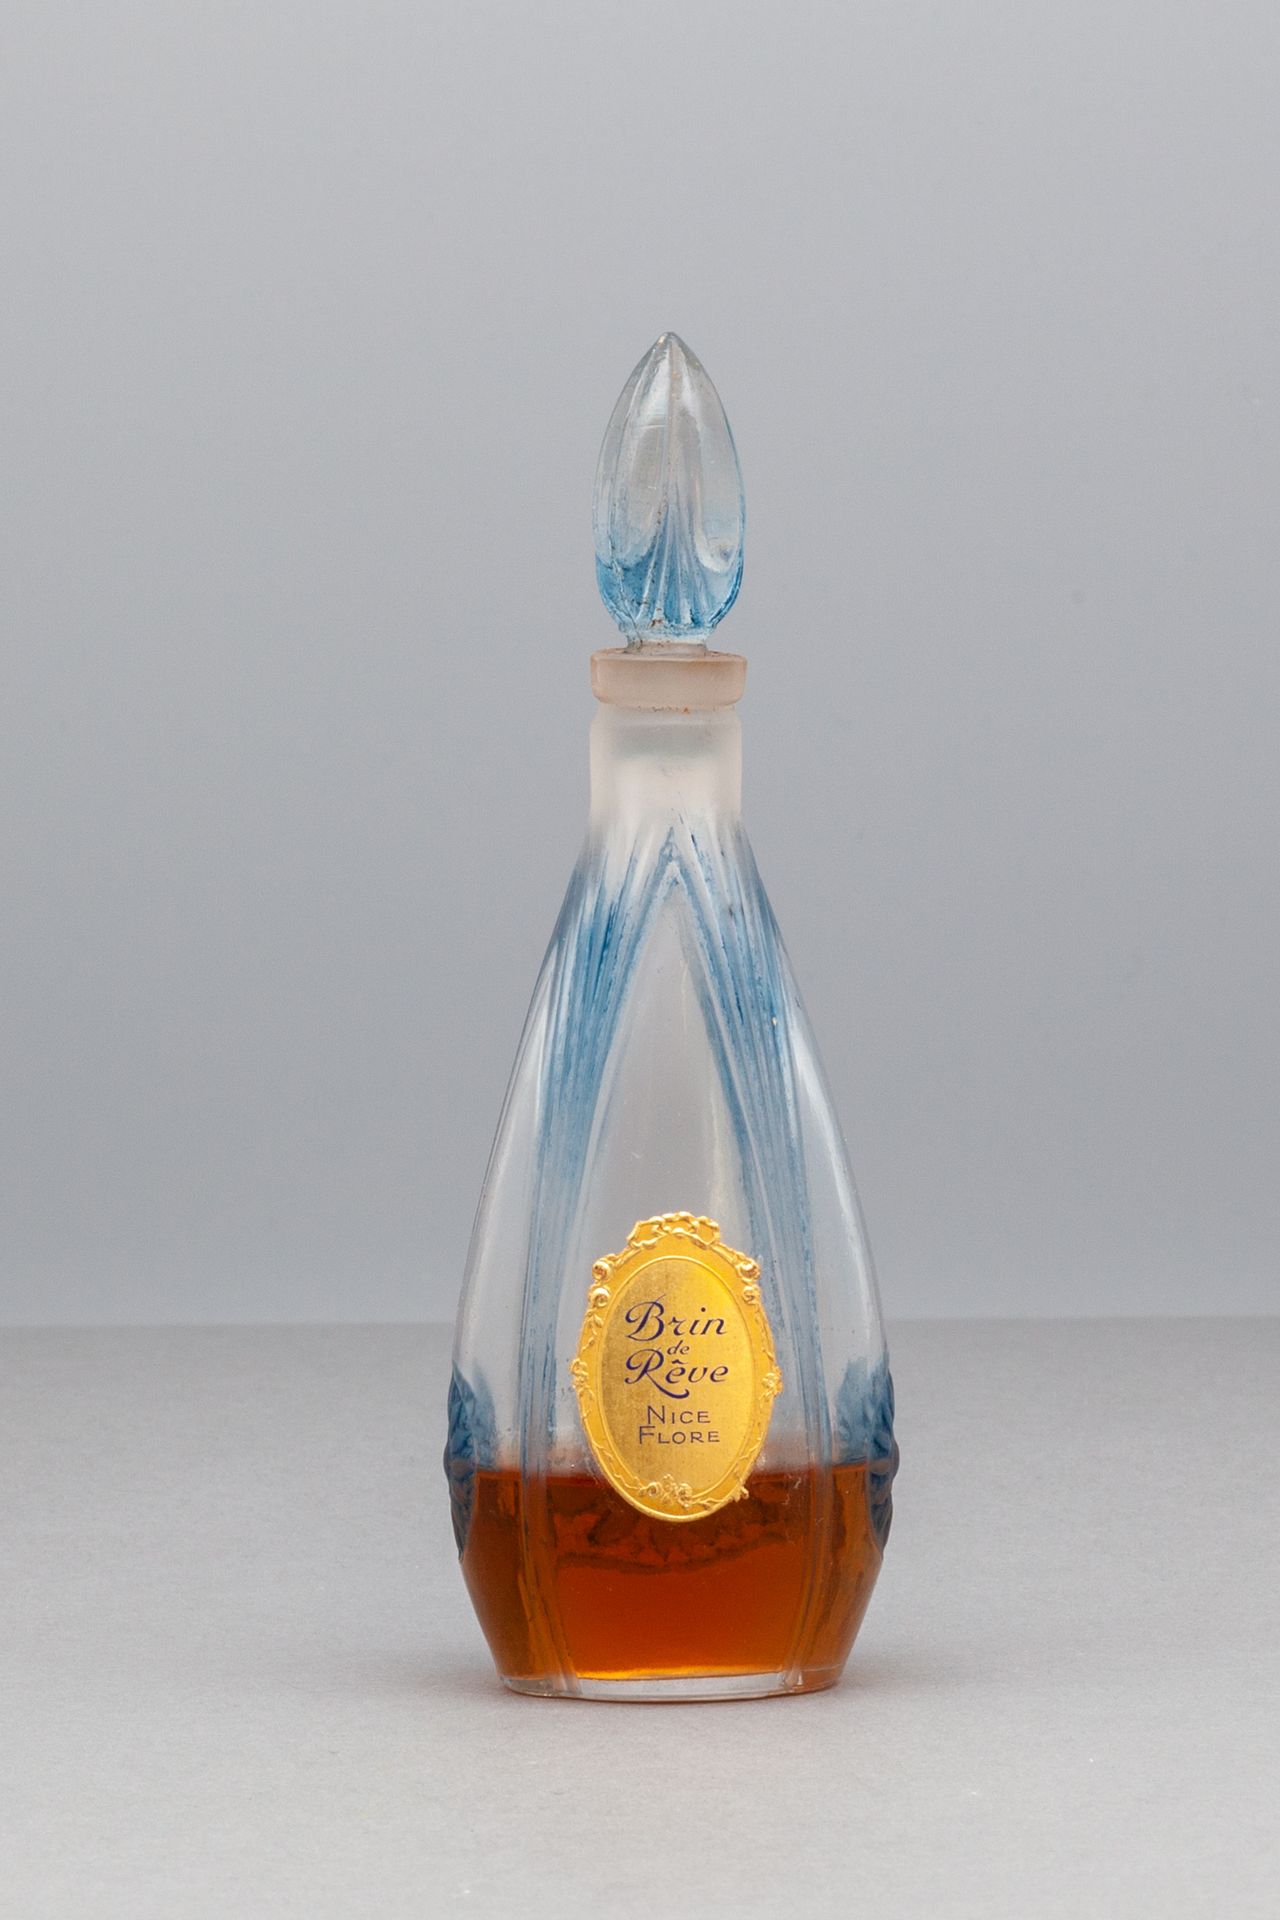 NICE FLORE "BRIN DE RÊVE" Glass bottle in the shape of drop of water of blue col&hellip;